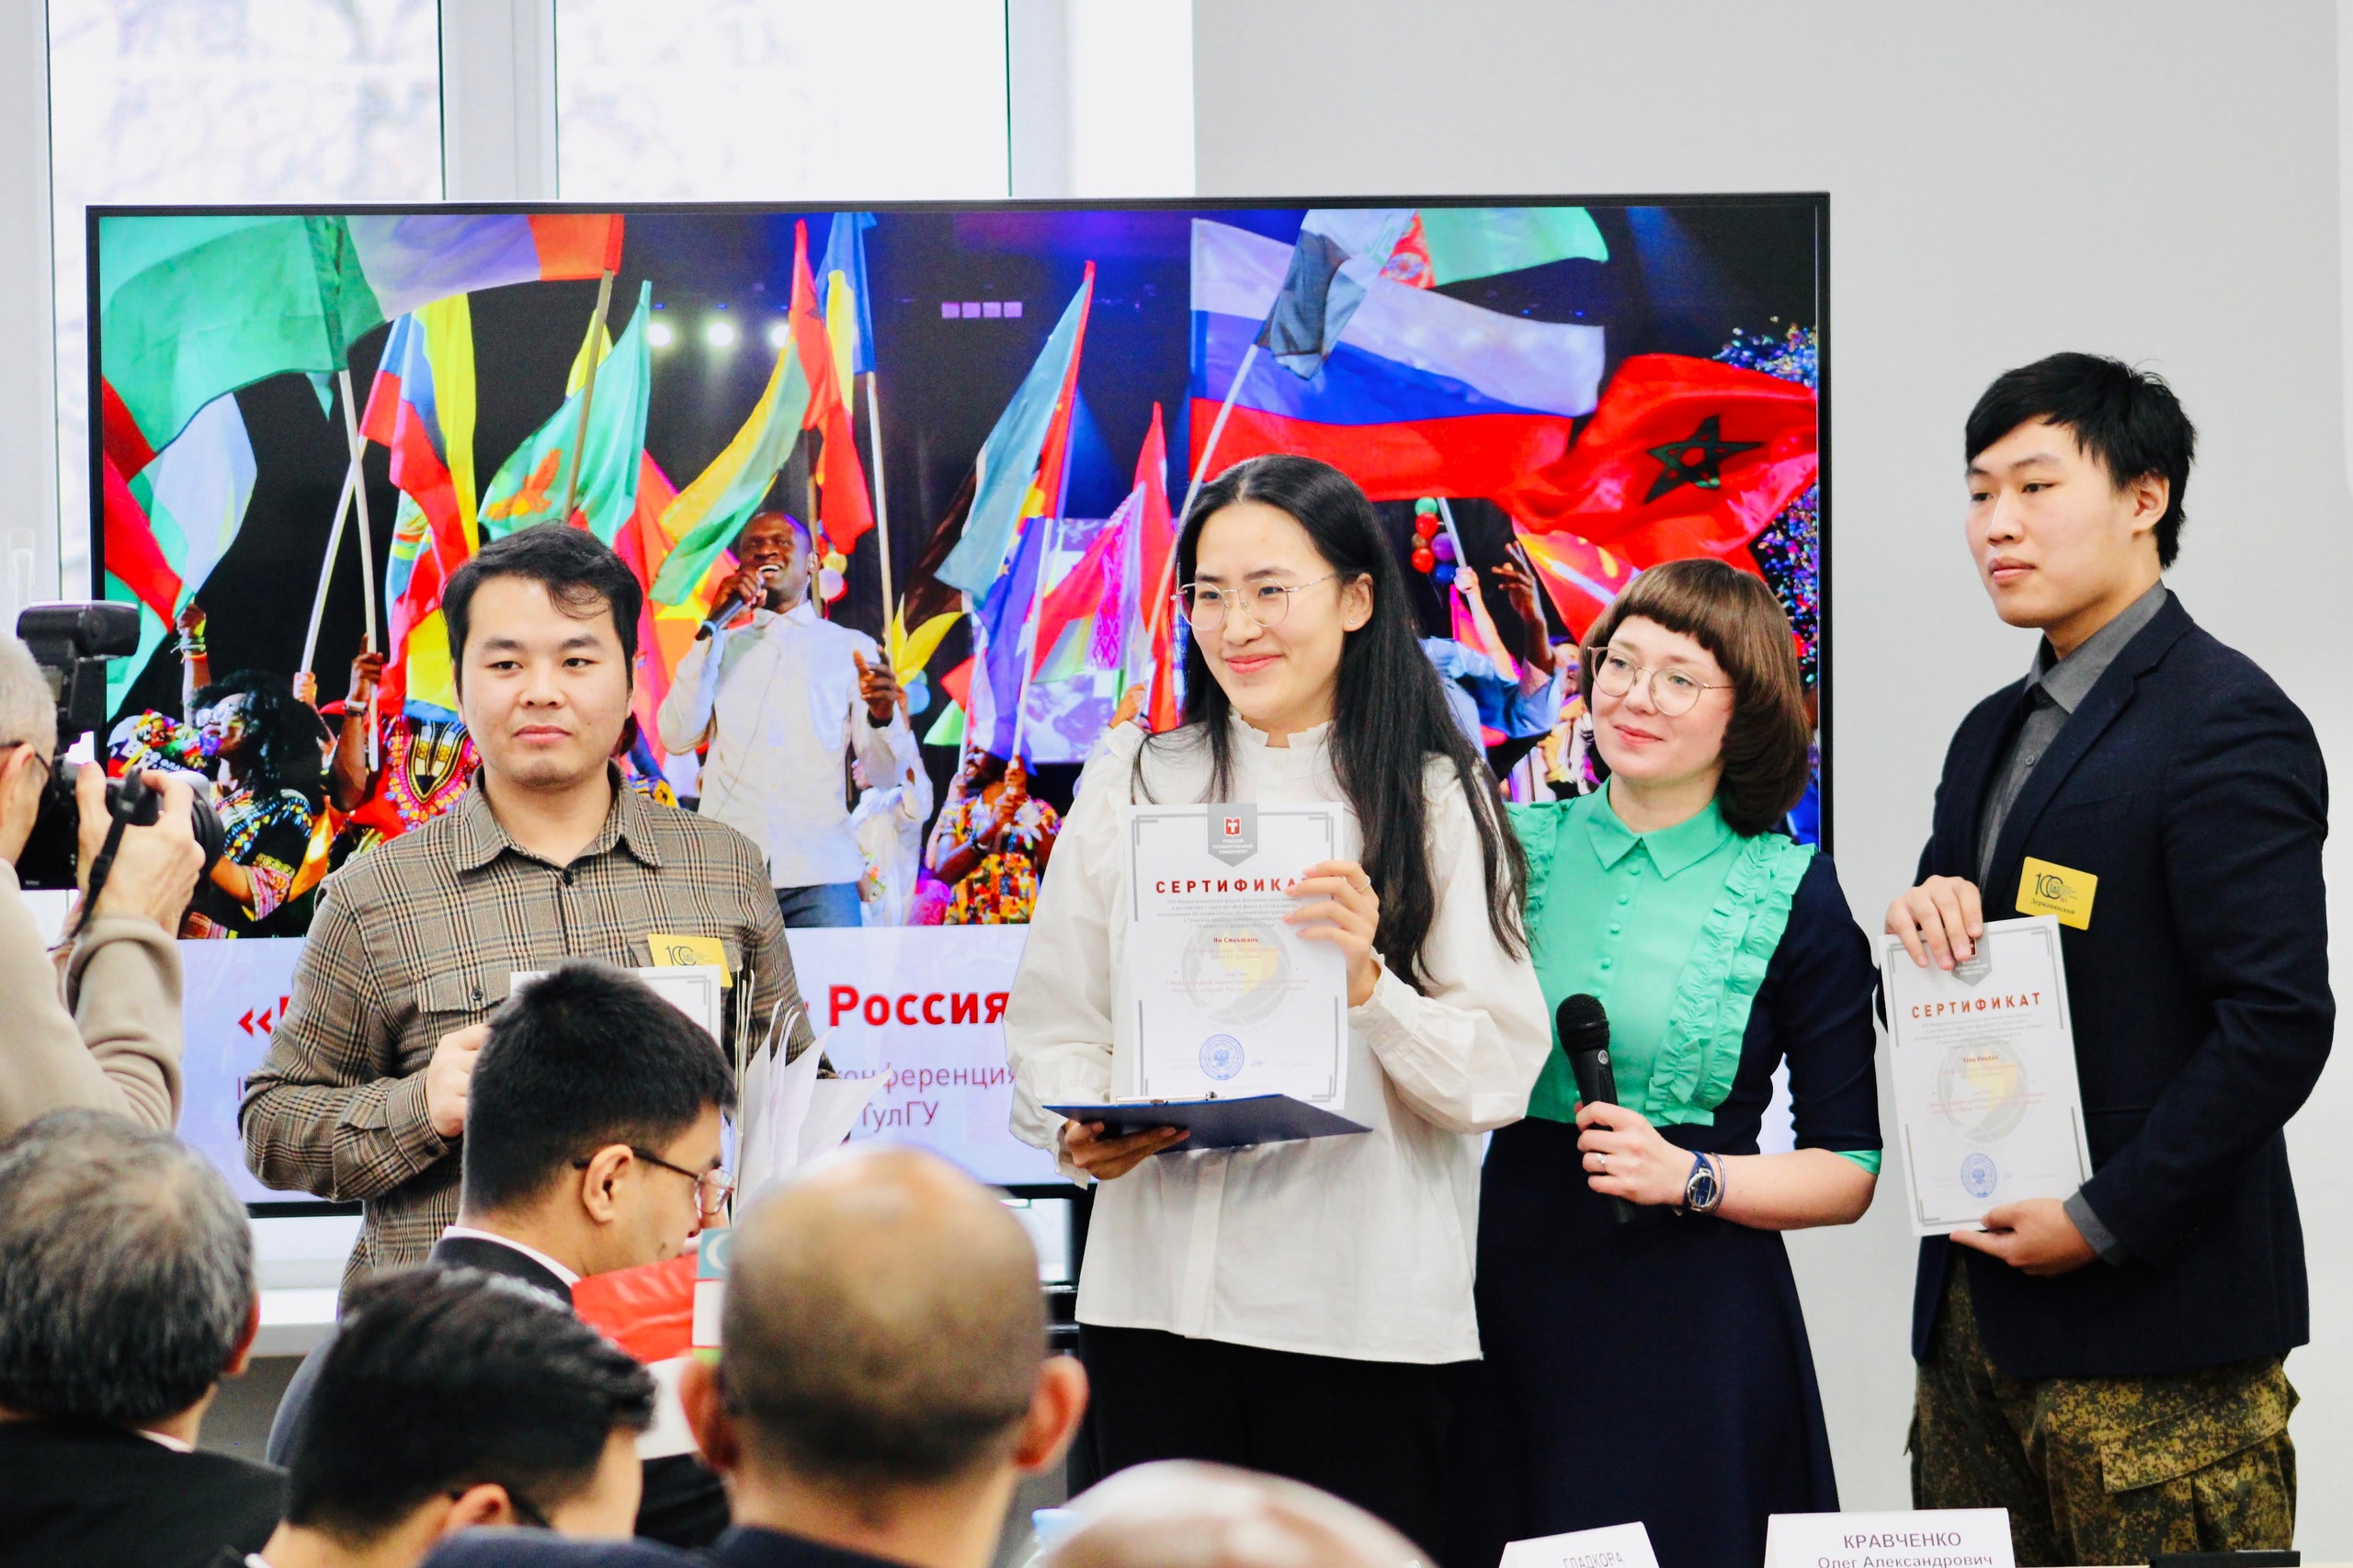 Державинцы приняли участие в XVII Межрегиональном фестивале иностранных и российских студентов фото анонса